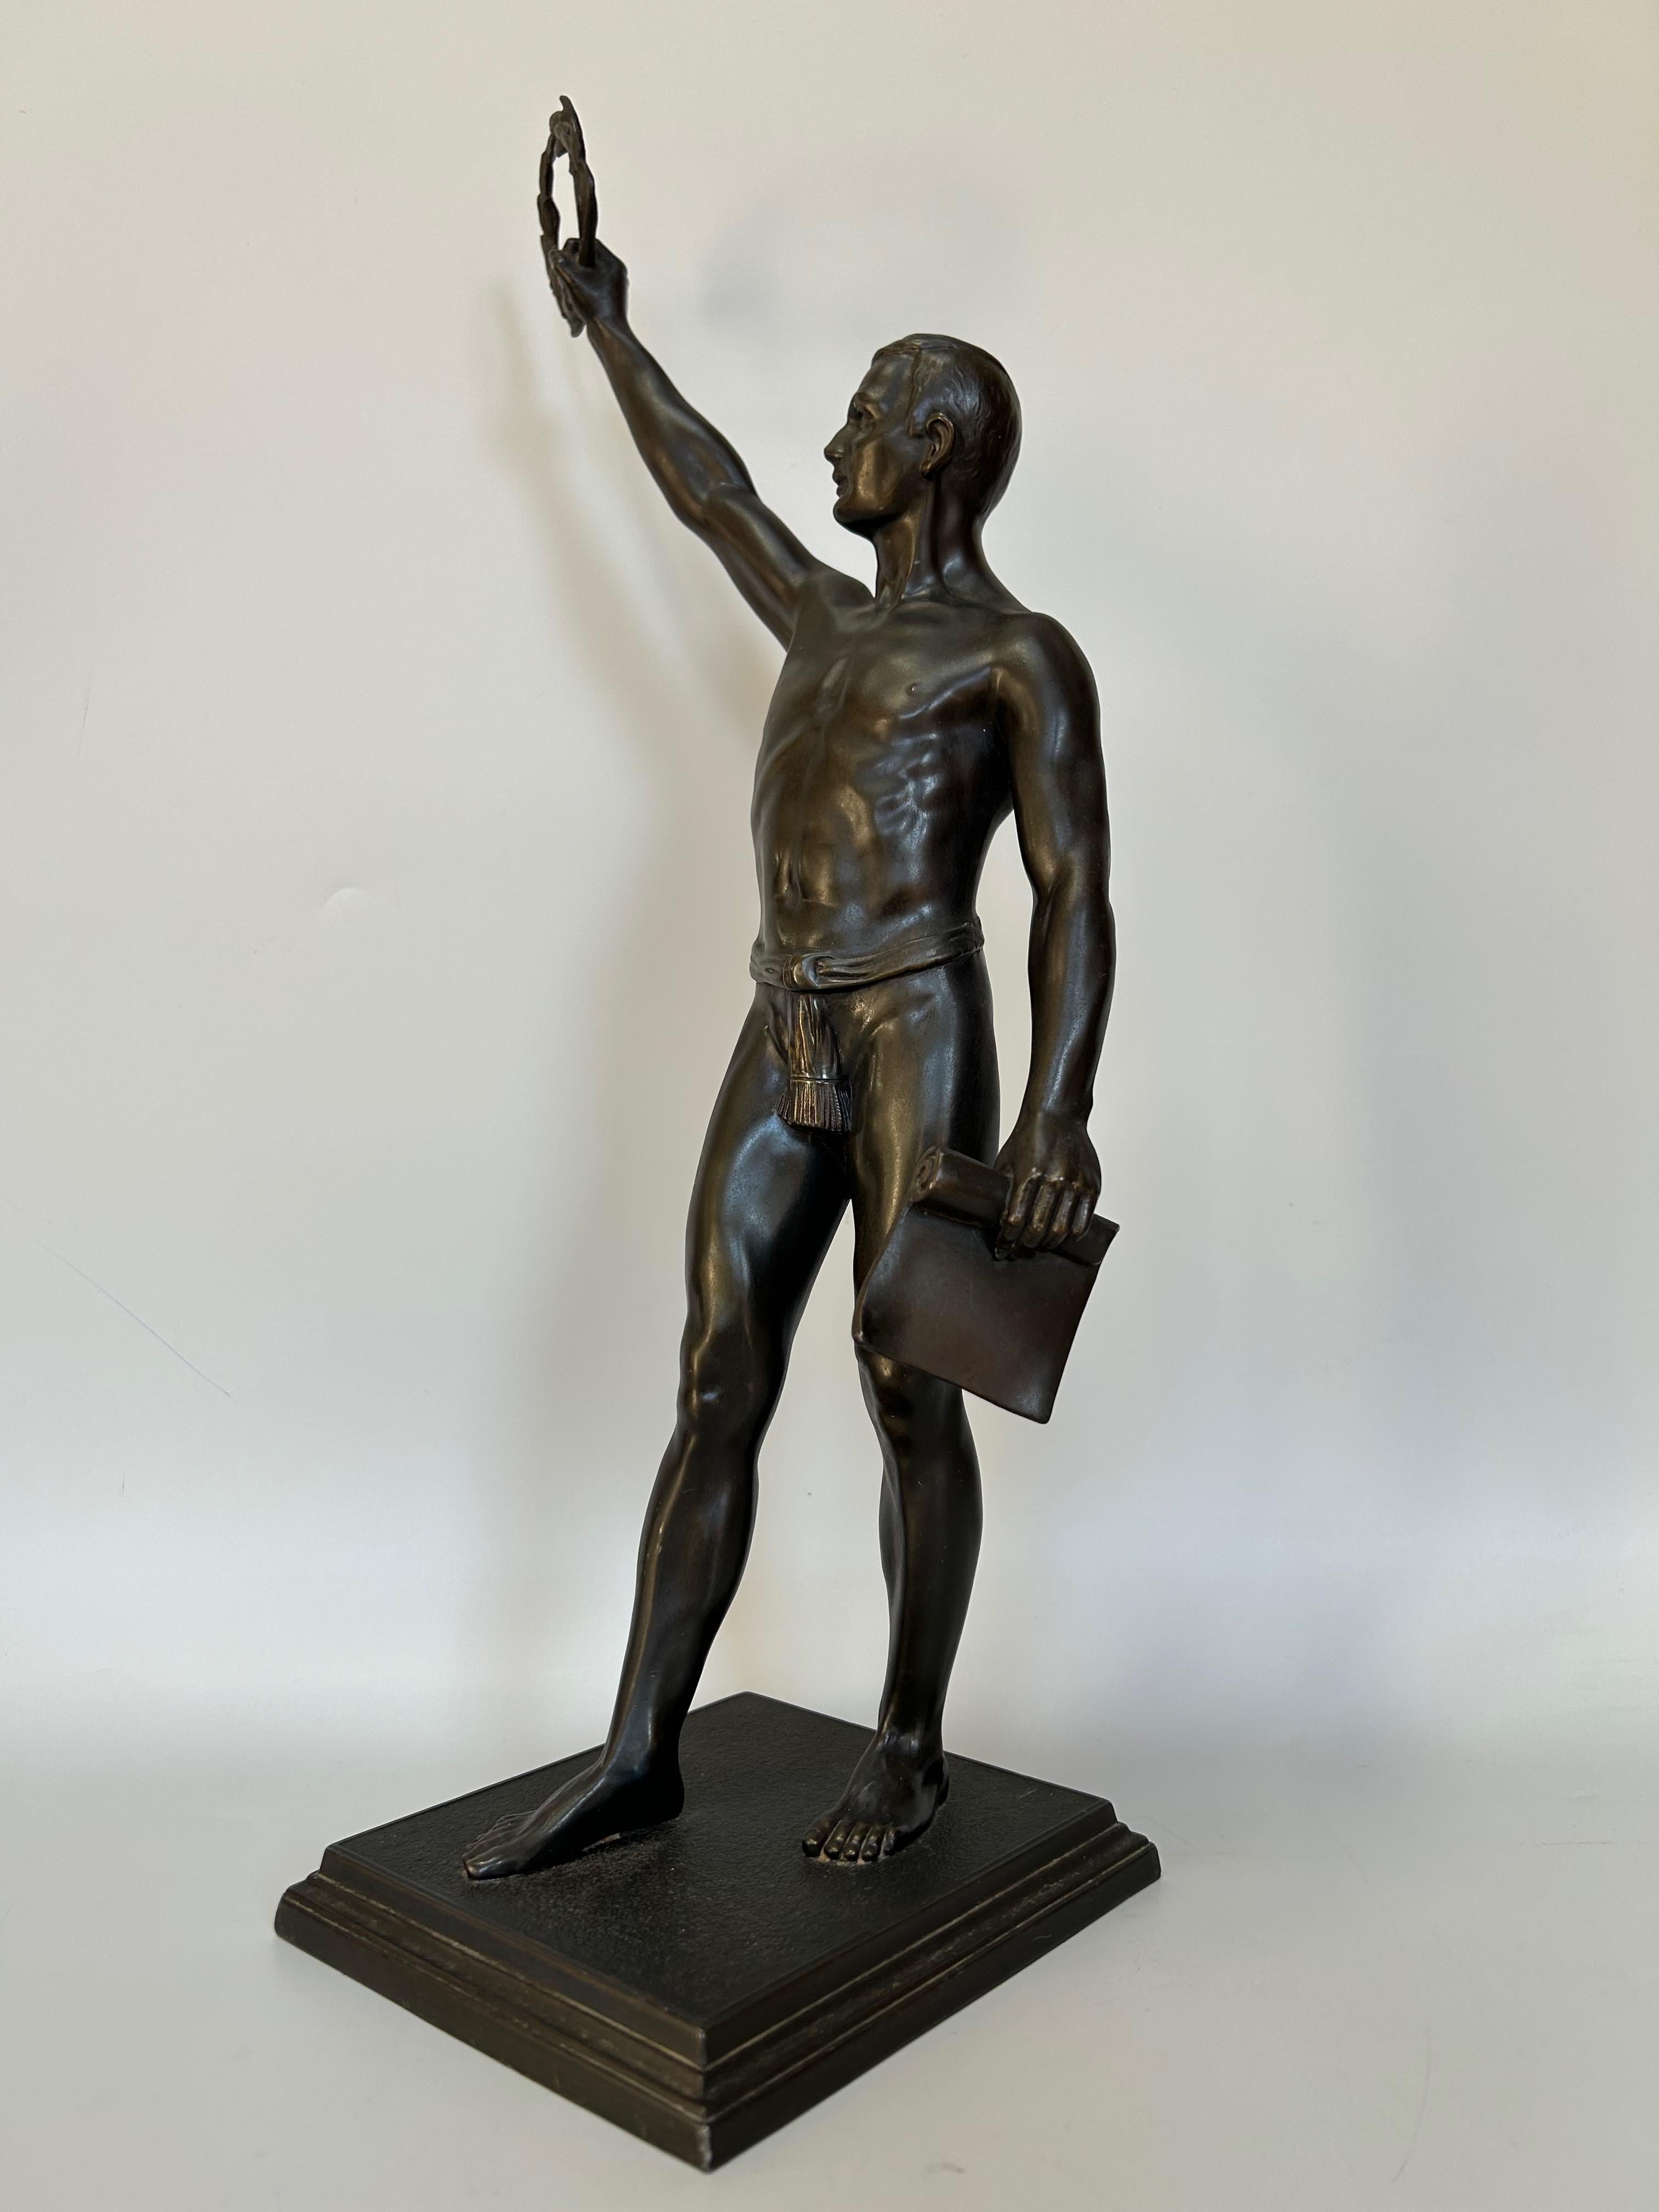 Art-déco-Skulptur um 1920 aus Zinn.
Der Olympische Gruß wurde wahrscheinlich 1924 anlässlich der Olympischen Spiele veröffentlicht.
Sehr schöne Bronzepatina und gute Qualität der Ausführung.

Länge: 14,5 cm
Breite: 13 cm
Höhe: 44,5 cm
Gewicht: 3 KG